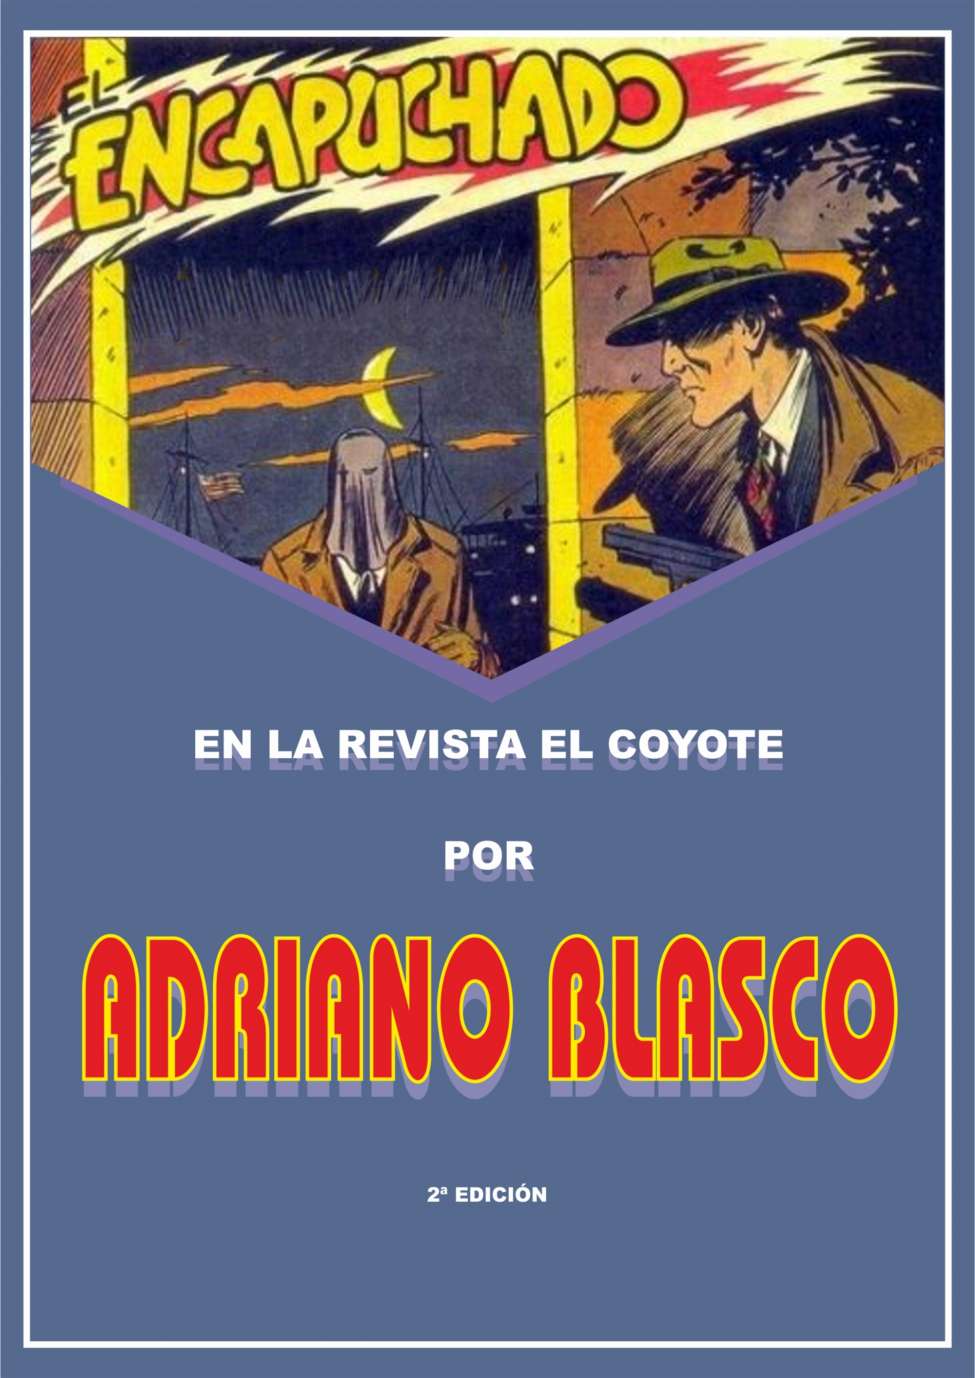 Comic Book Cover For El Encapuchado en la revista El Coyote por Adriano Blasco 2d Ed